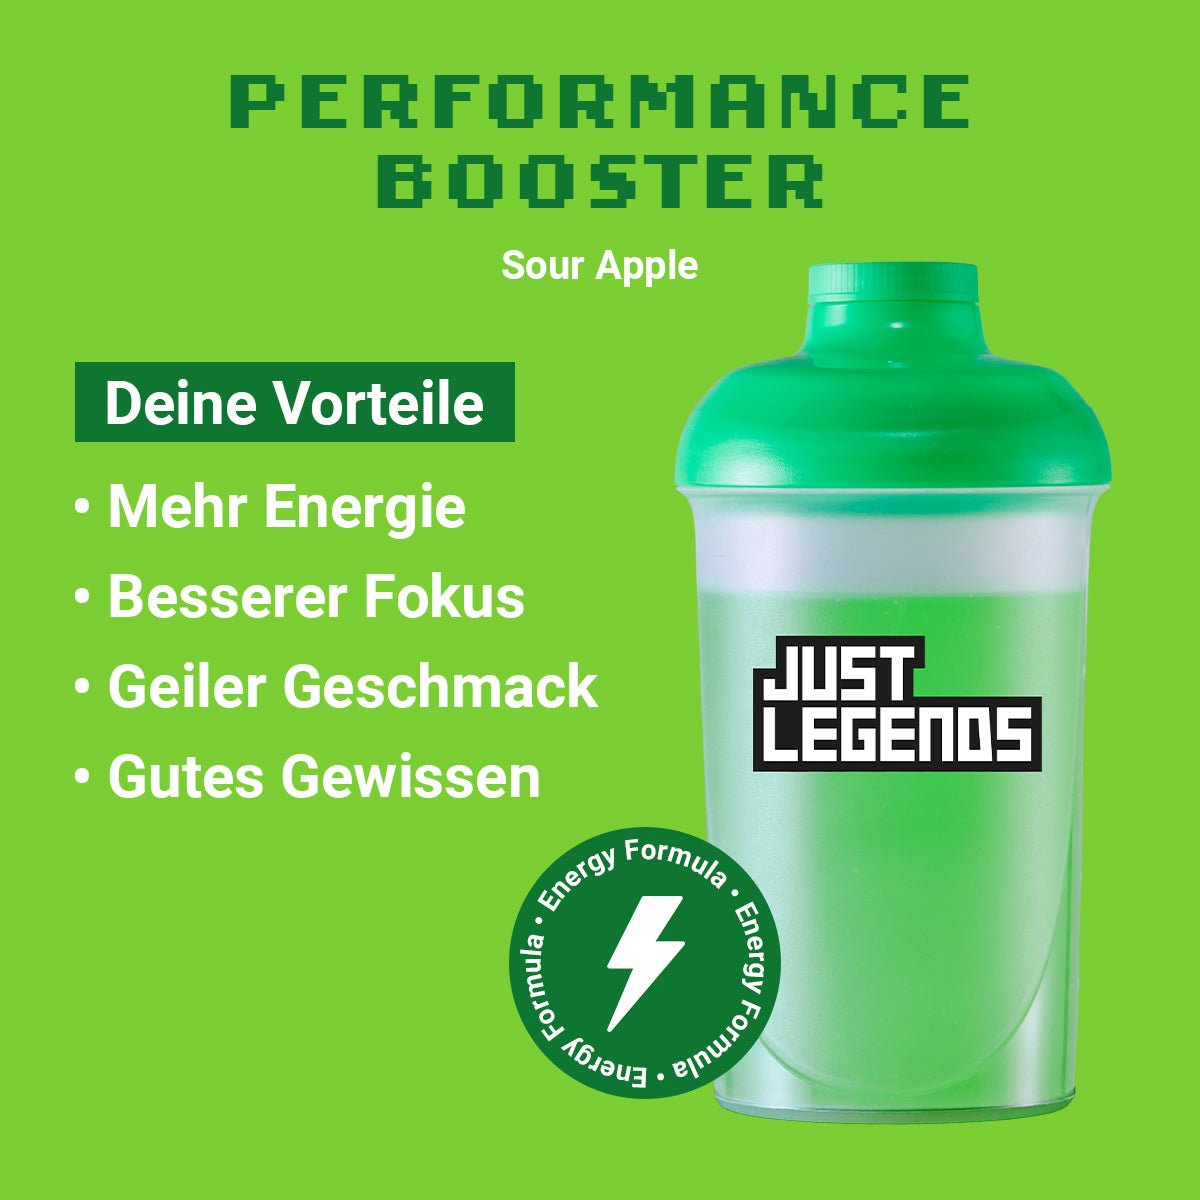 Just Legends Performance Booster Sour Apple | Funktionaler, veganer Performance Booster auf Pulverbasis ohne Zucker, mit wenig Kalorien, vielen Vitaminen und natürlichen Aromen.